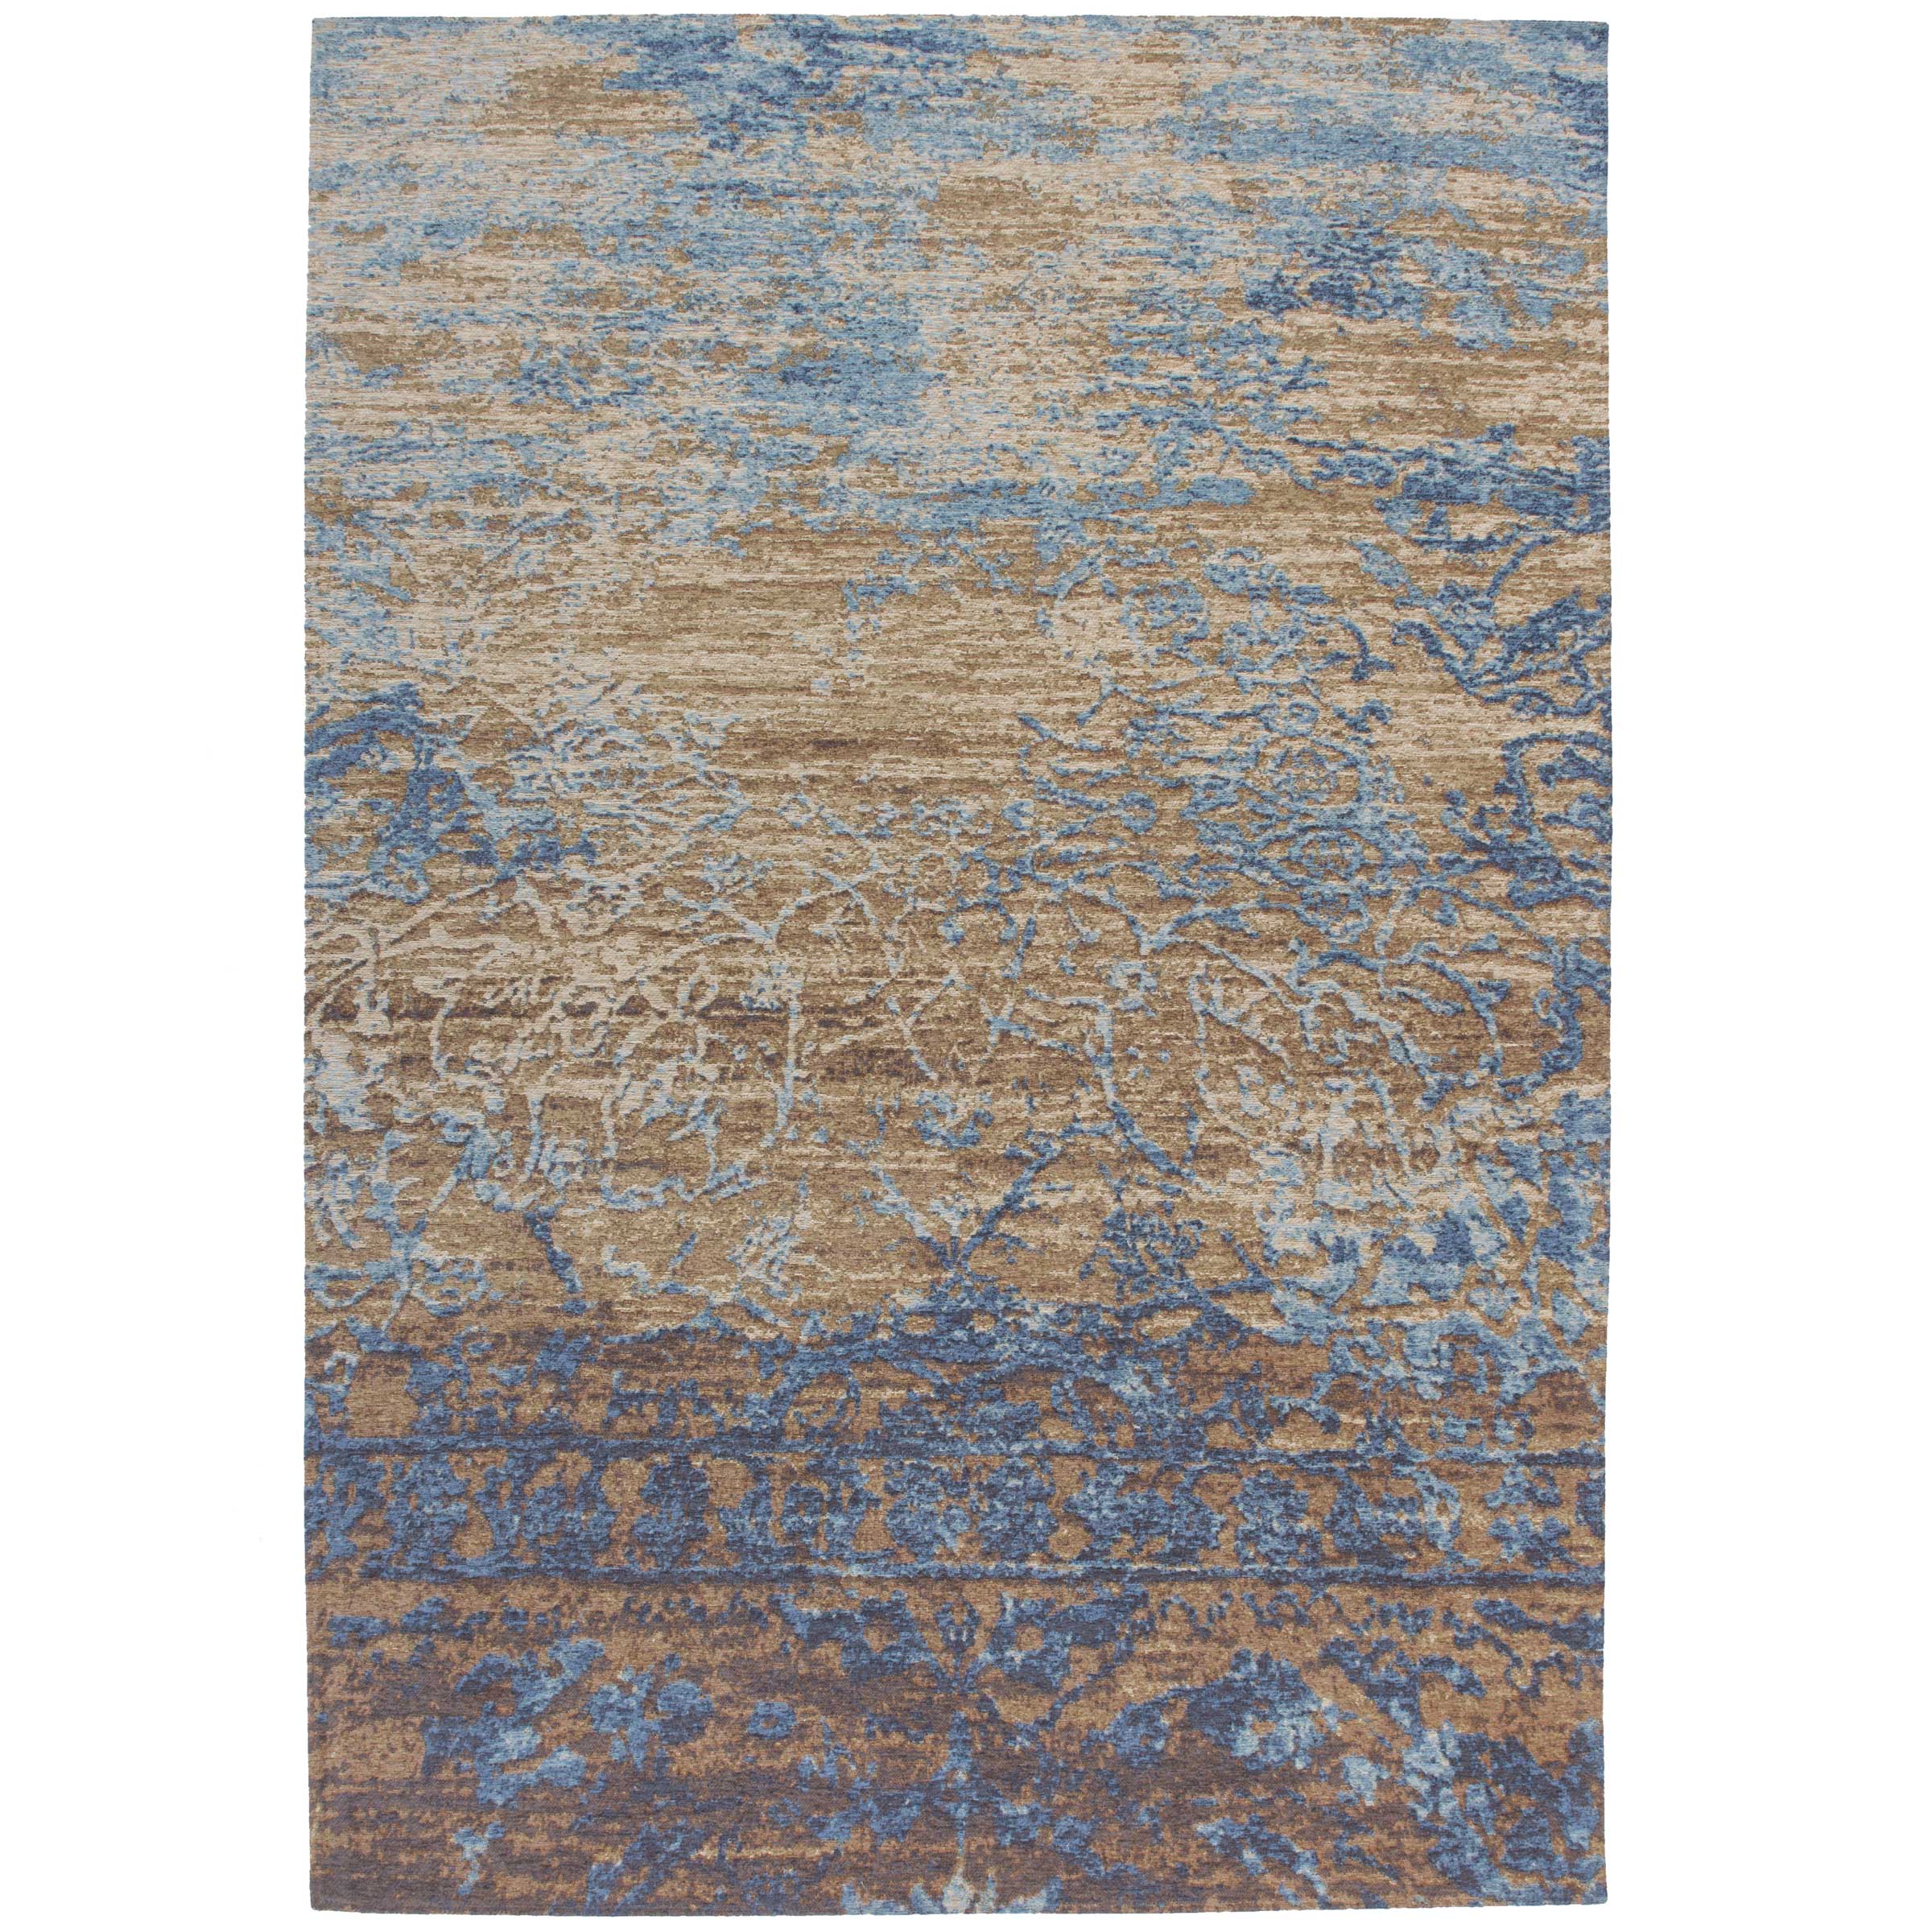 Taalkunde Protestant monteren Blauw vintage tapijt kopen? | Vintage vloerkleden | kameraankleden.nl